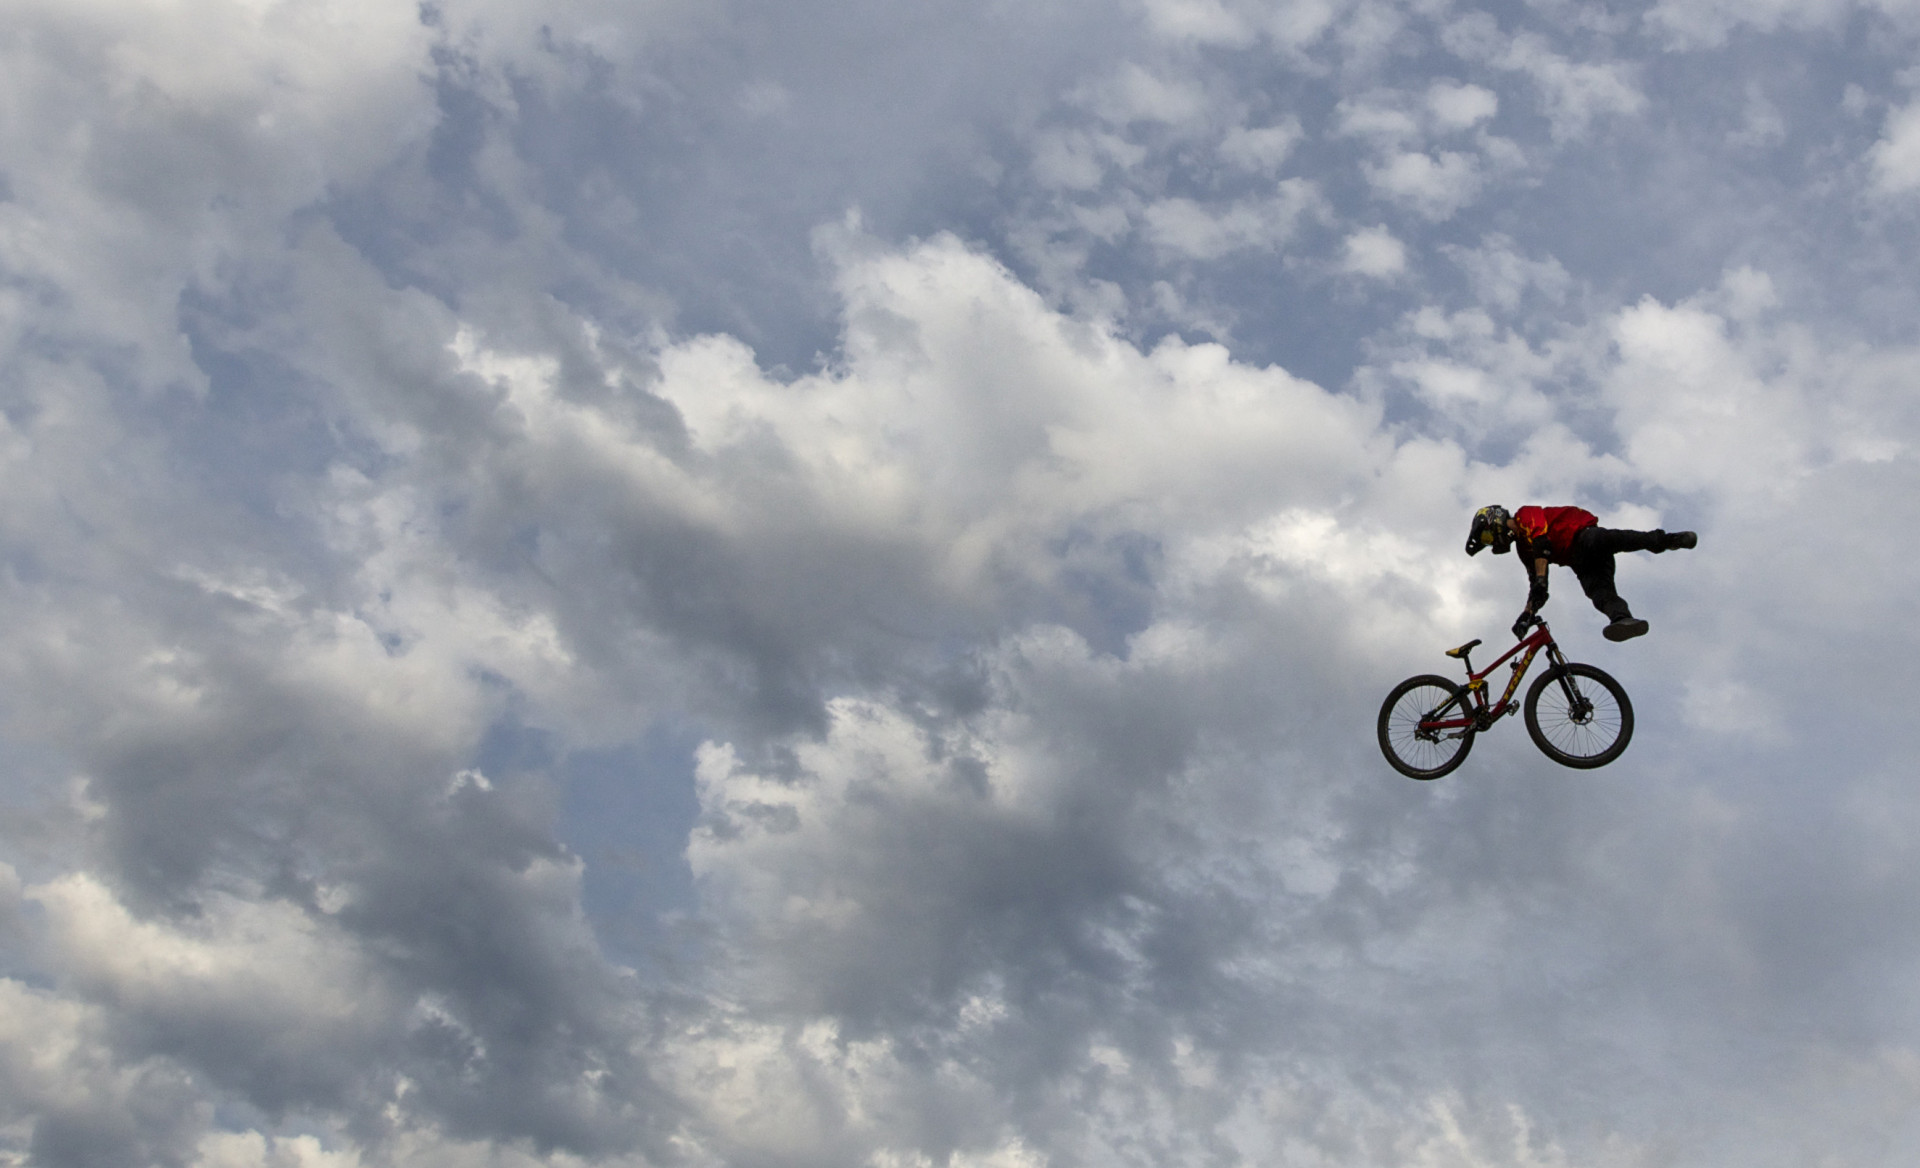 Un concurrent vole haut dans le ciel lors du Red Bull Joyride, à l'occasion du festival de VTT de Crankworx, à Whistler, en Colombie-Britannique.